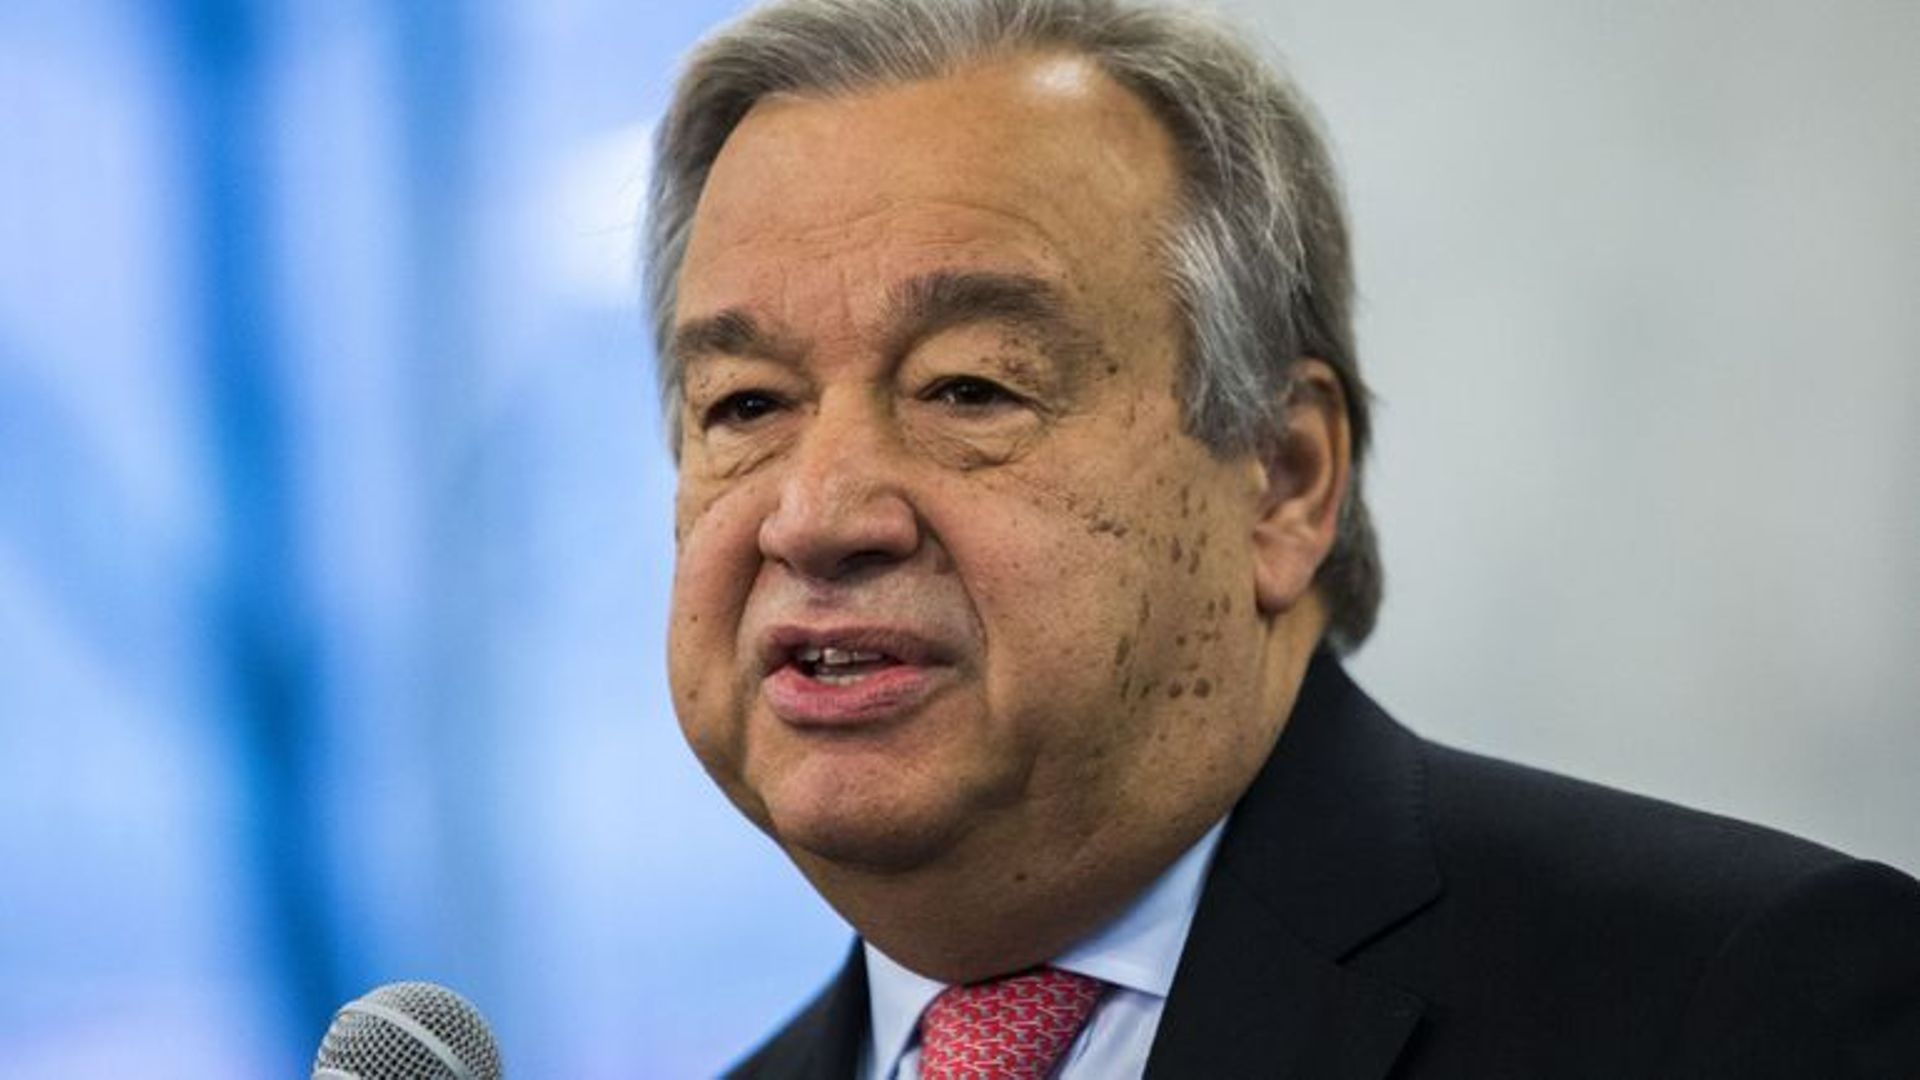 Coronavirus: Le chef de l'ONU réclame "un cessez-le-feu immédiat et mondial"